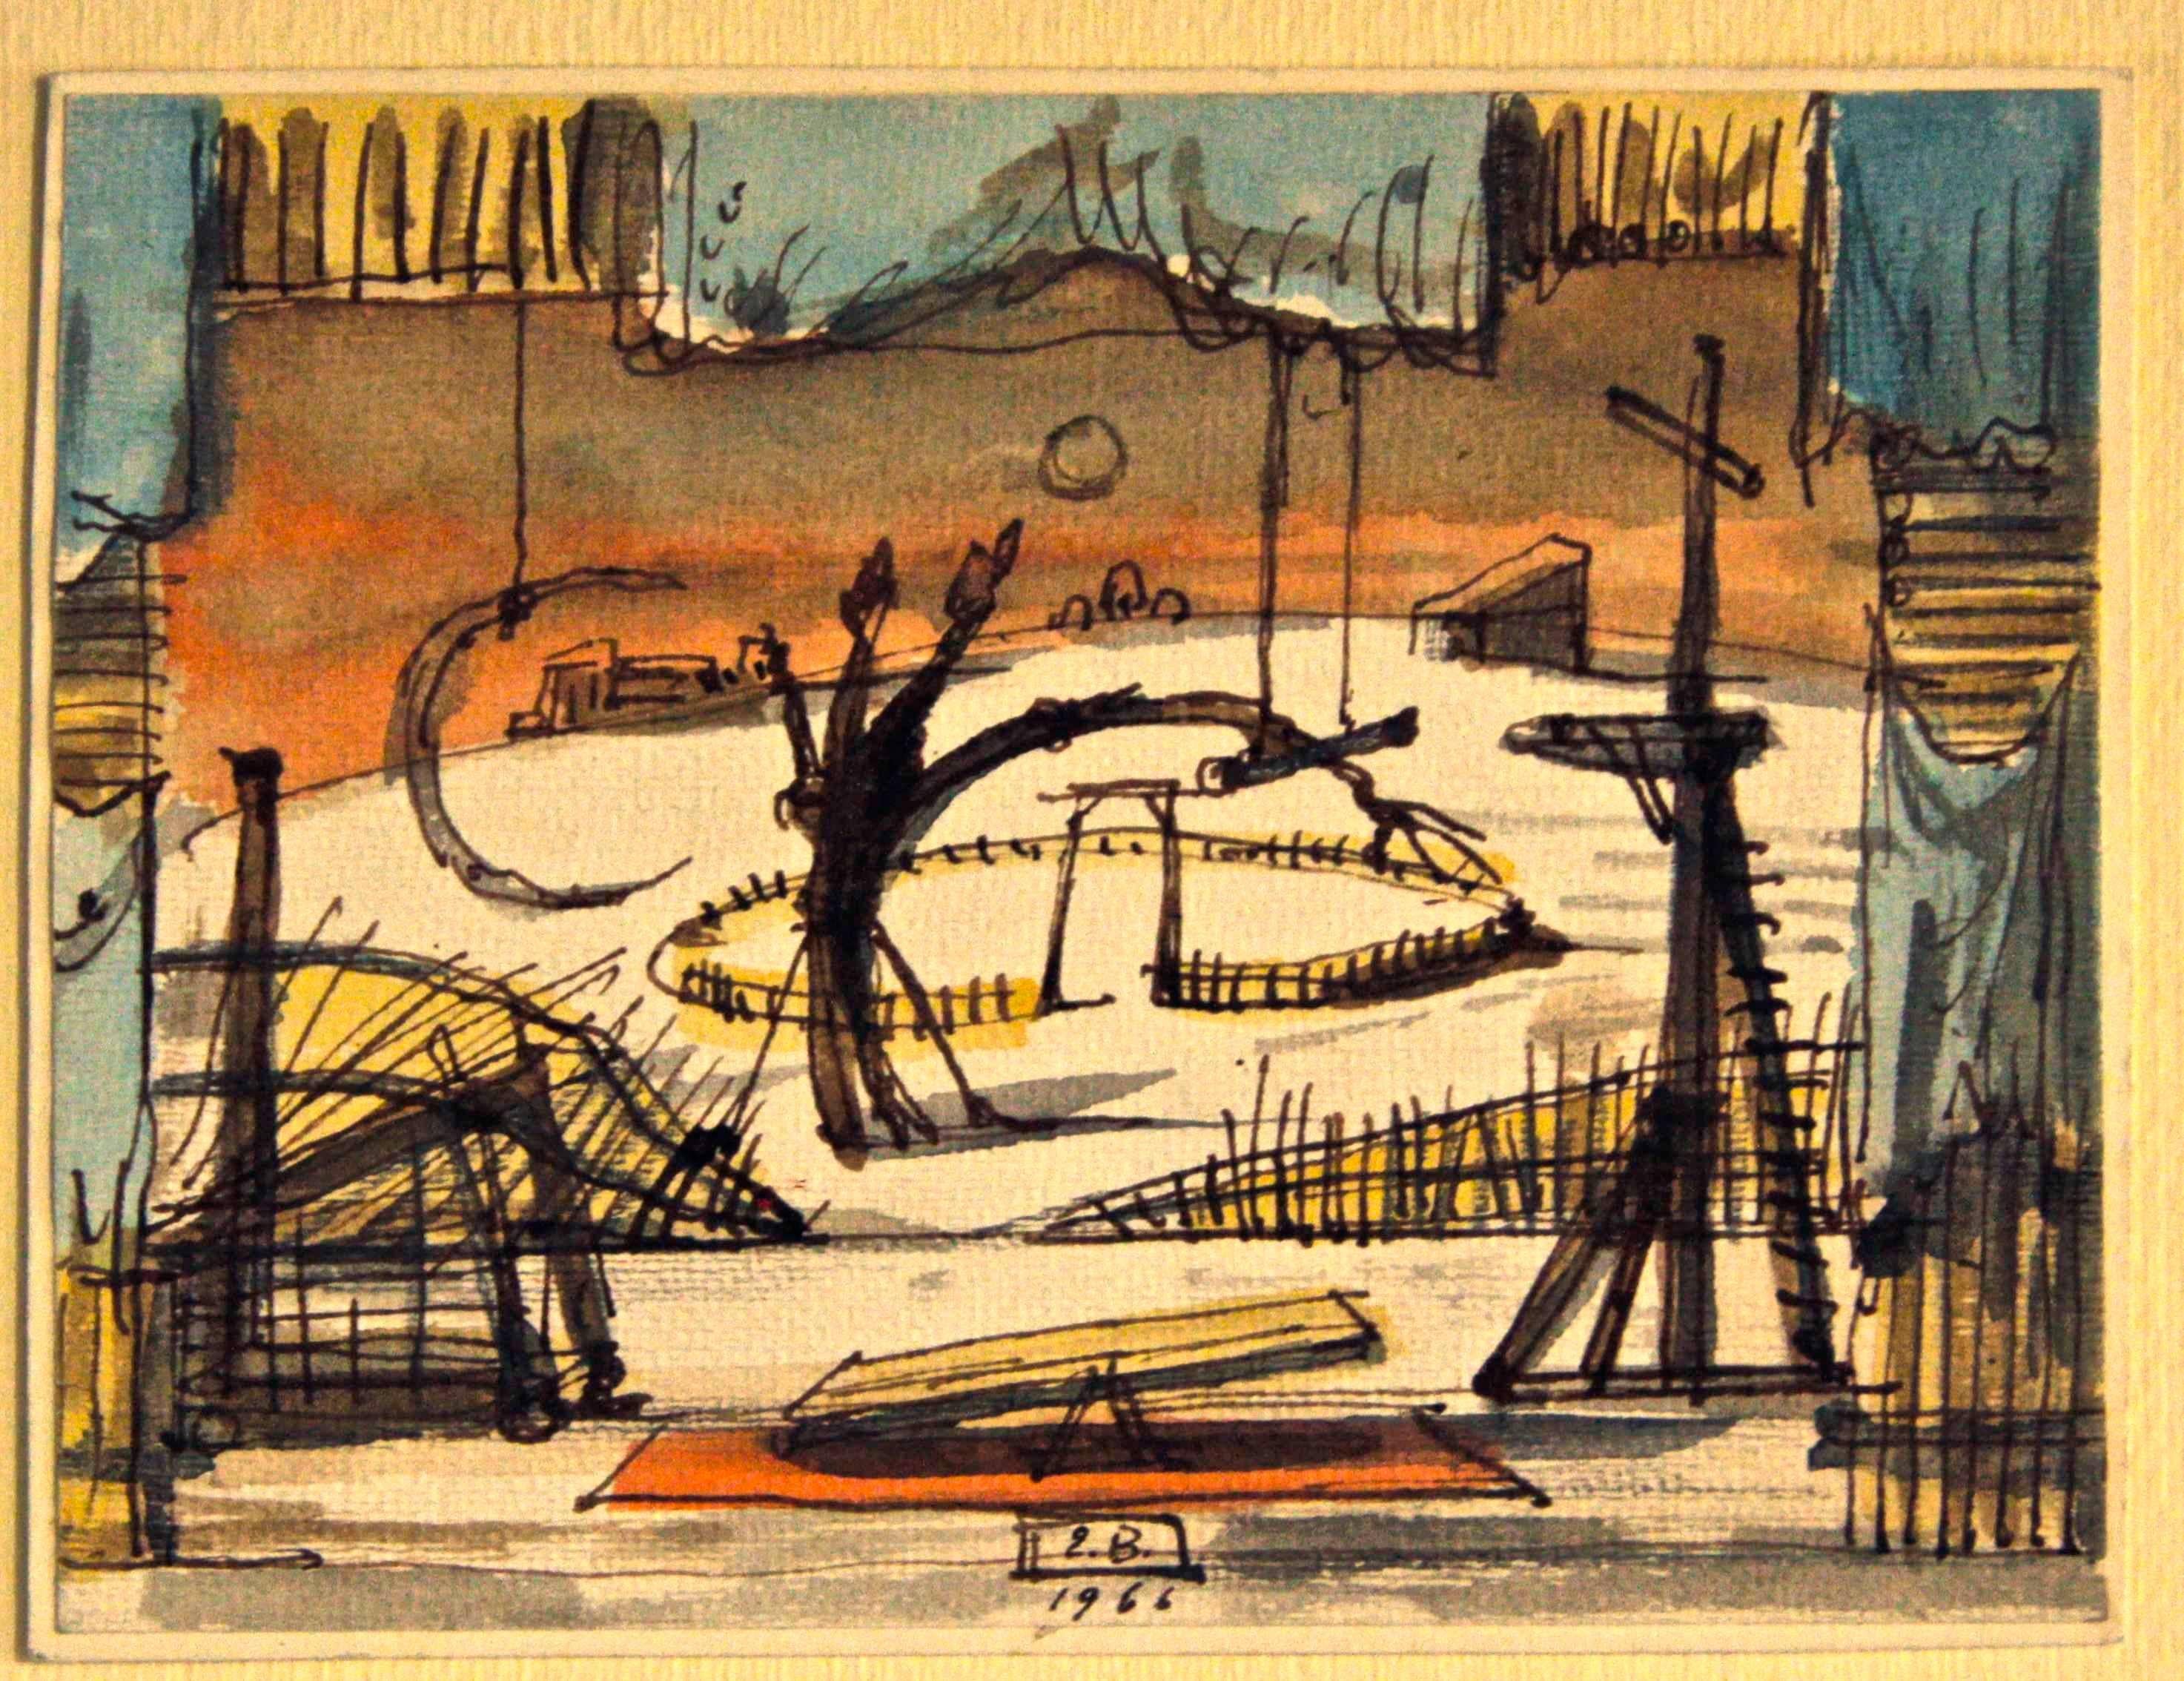 Eugene Berman Landscape Art - Study for a Scenography - Ink Drawing by Eugène Berman - 1966